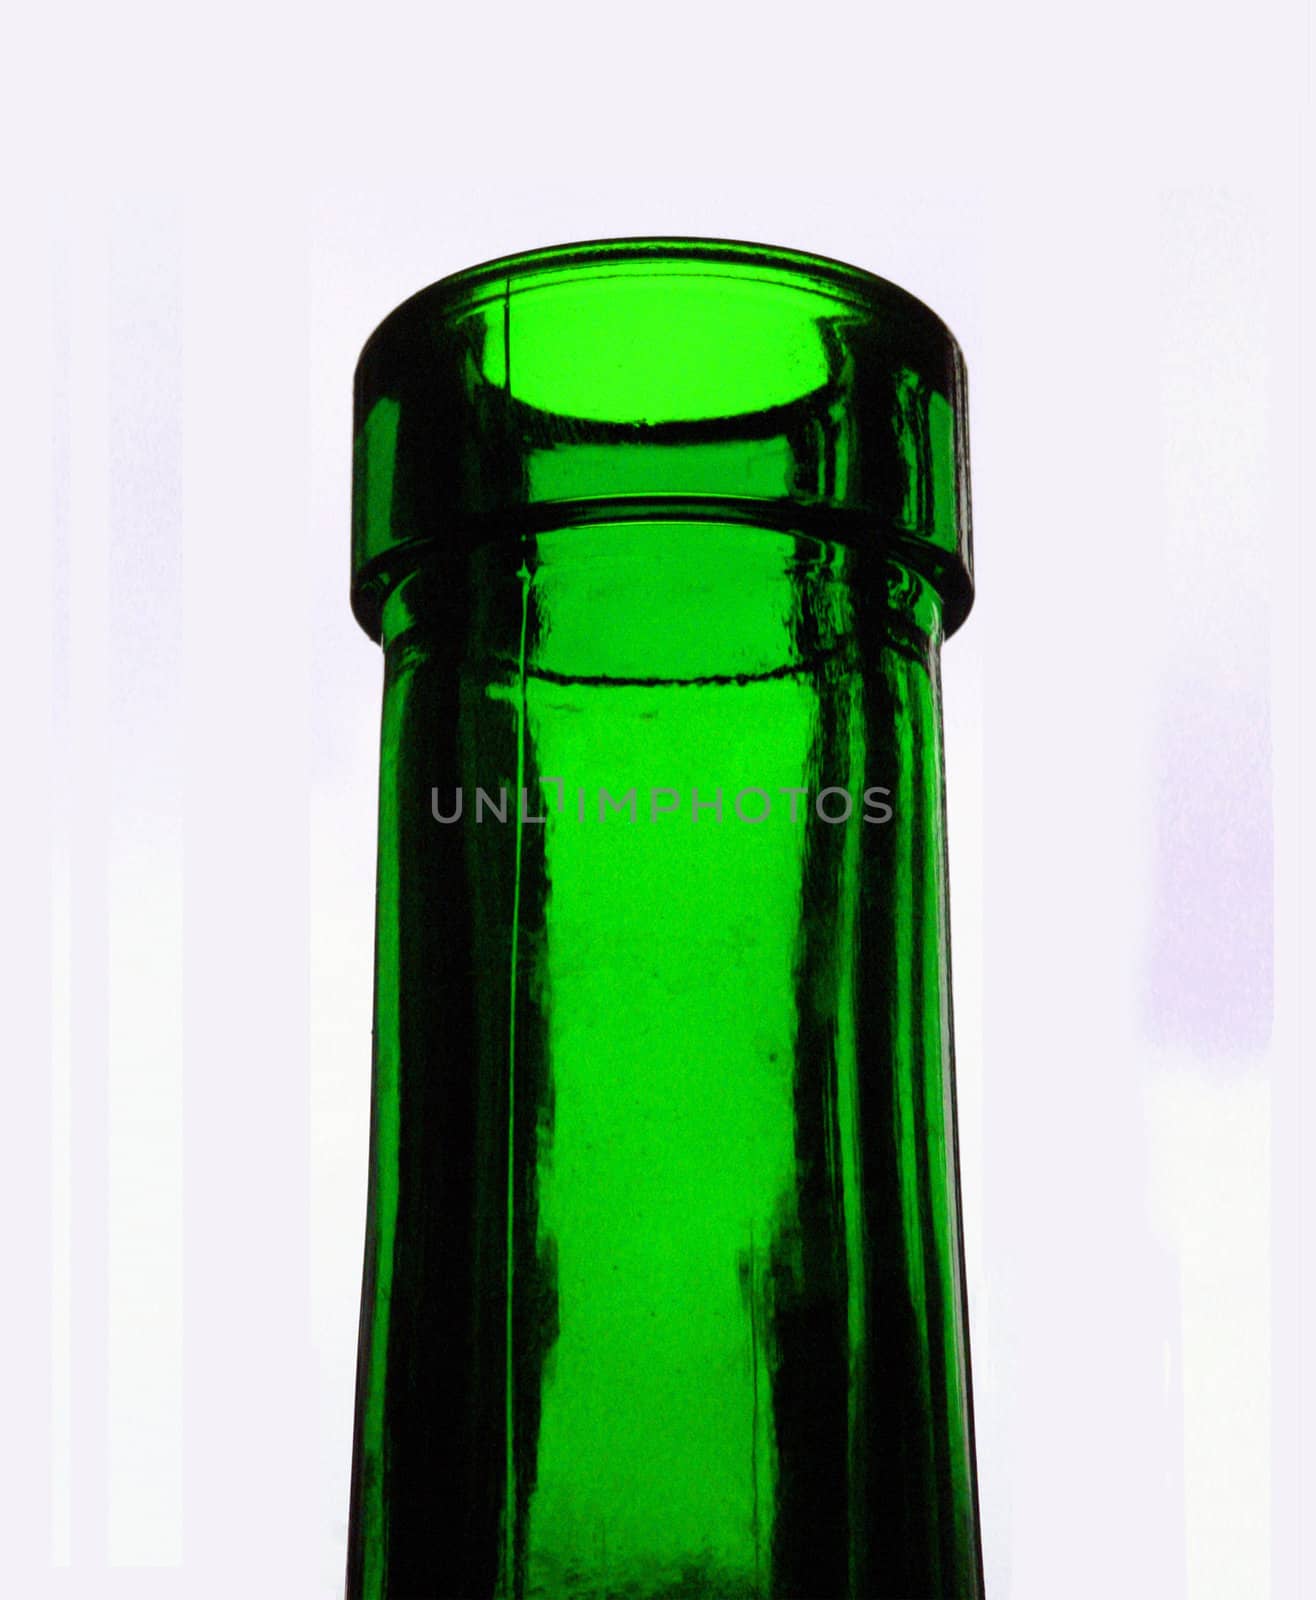 Green bottle neck on white background